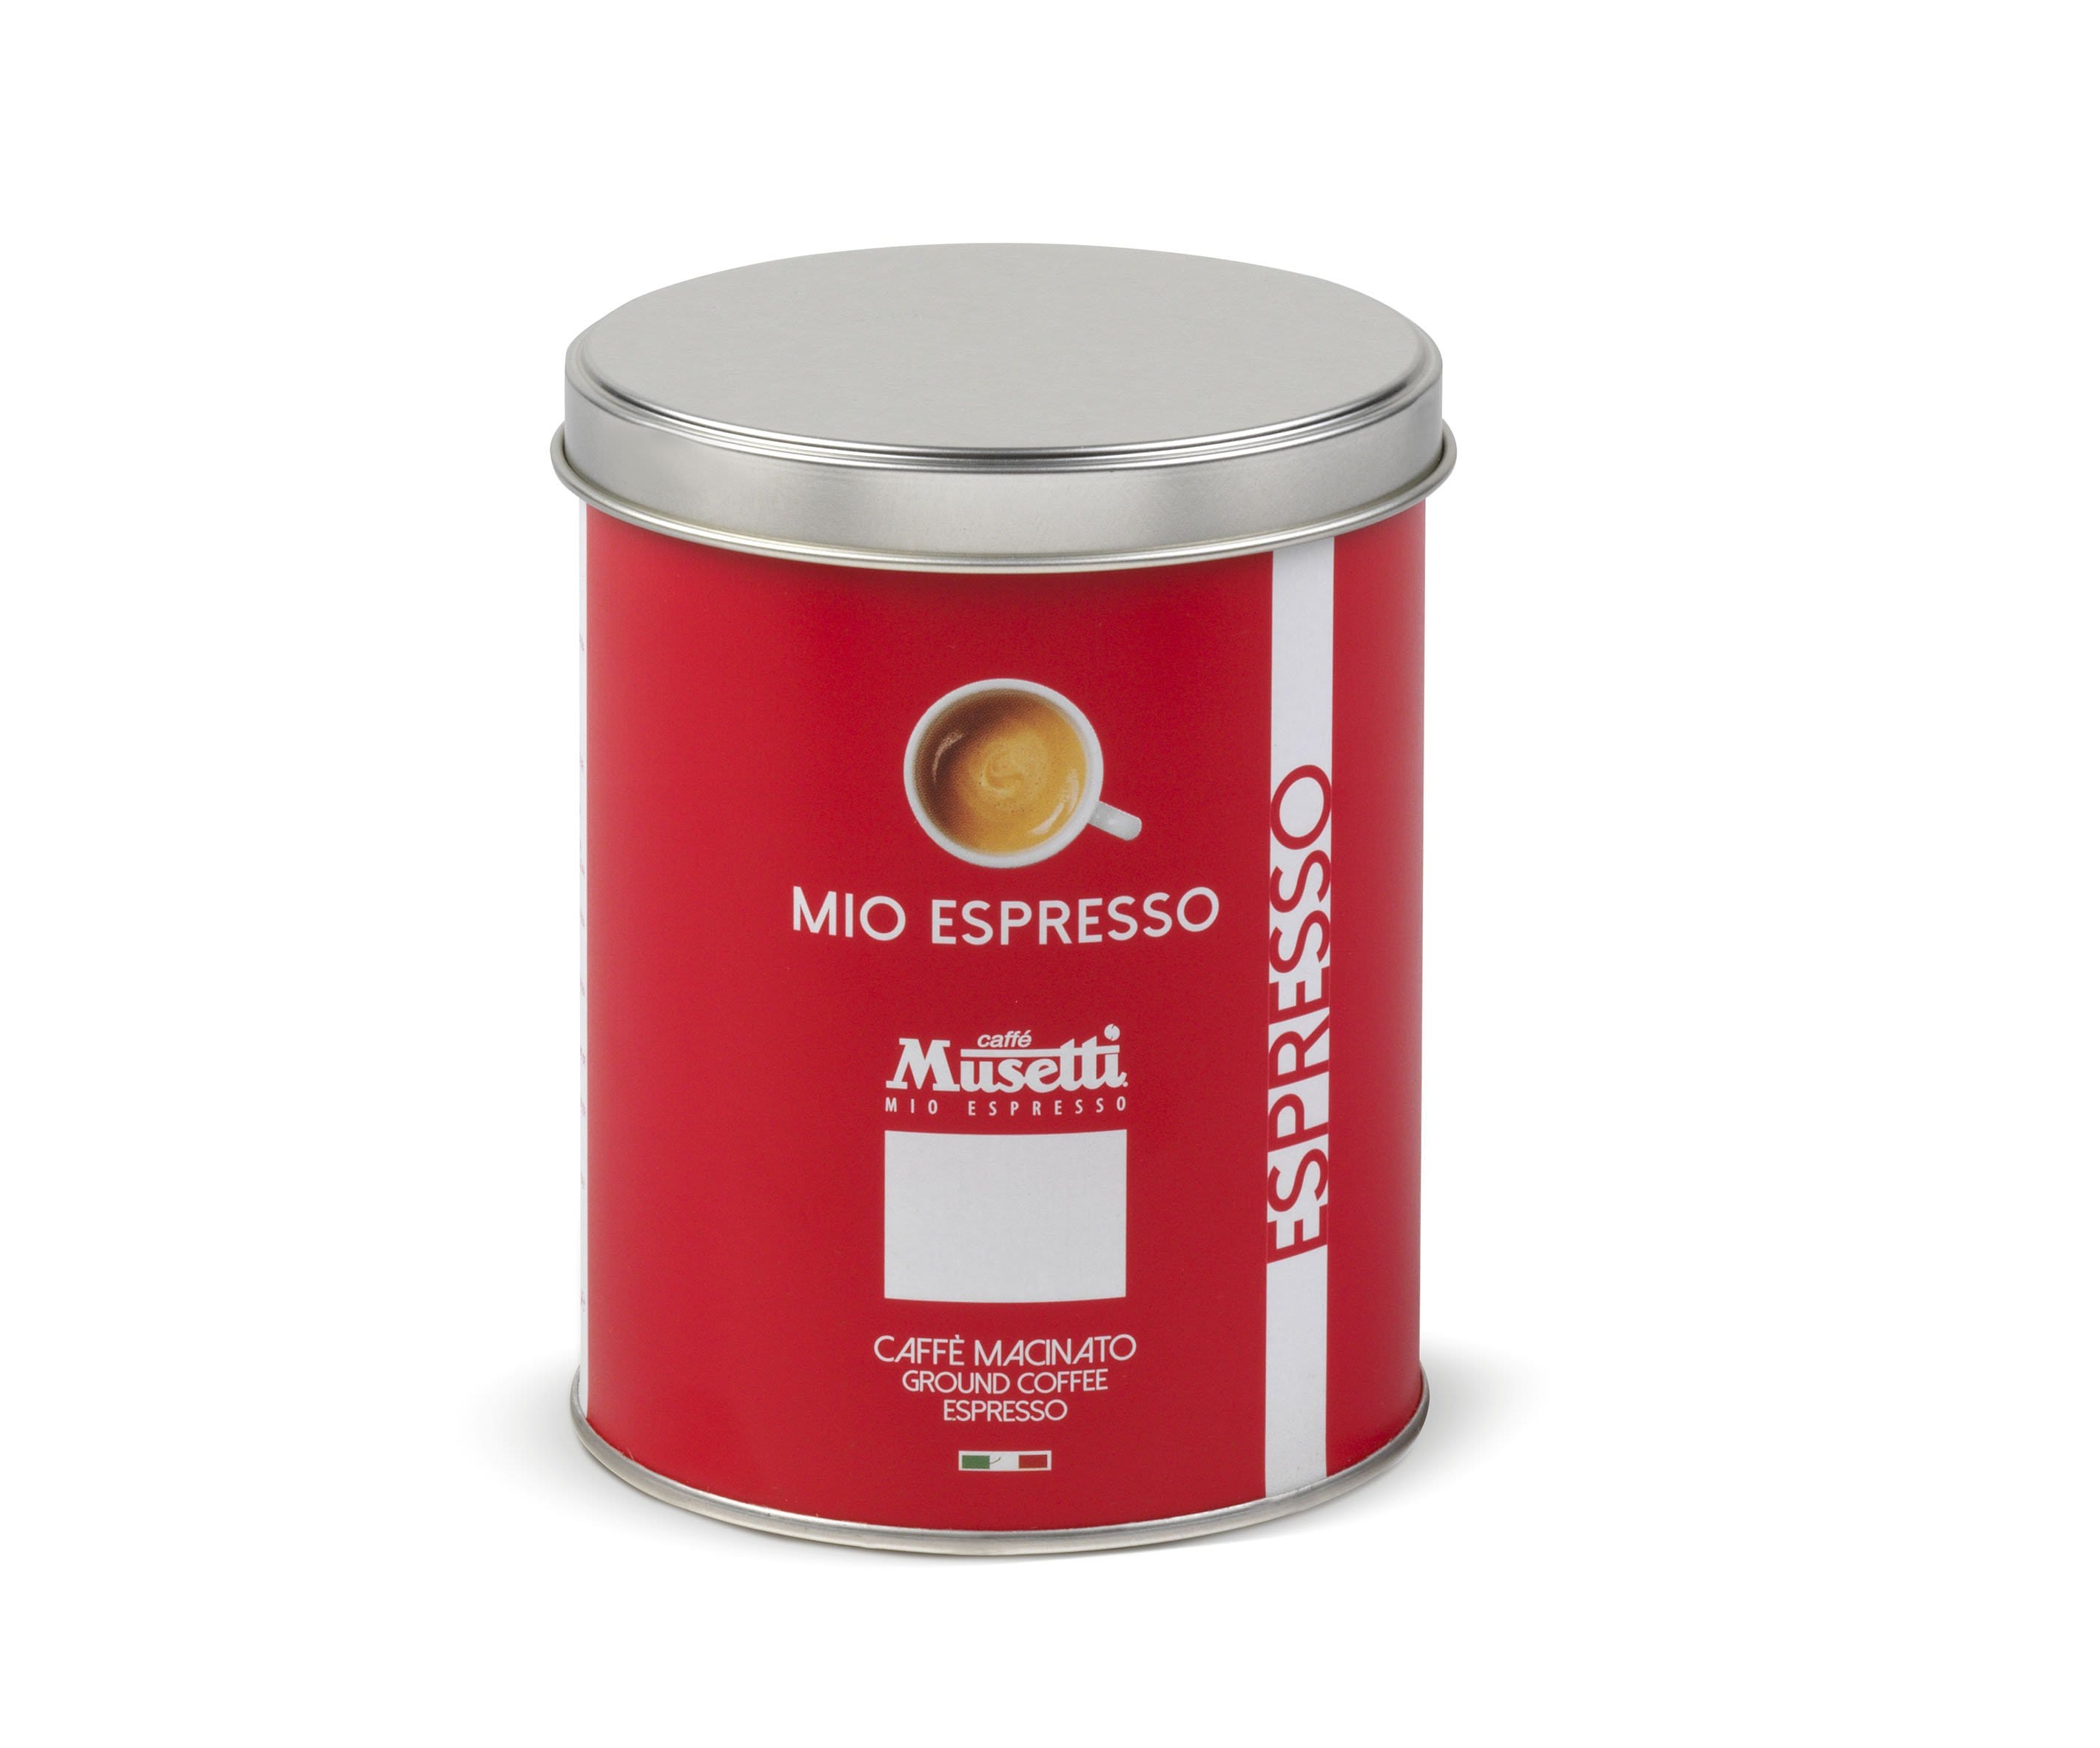 Musetti Malta kava Malta kava Musetti - Mio Espresso, 250 g